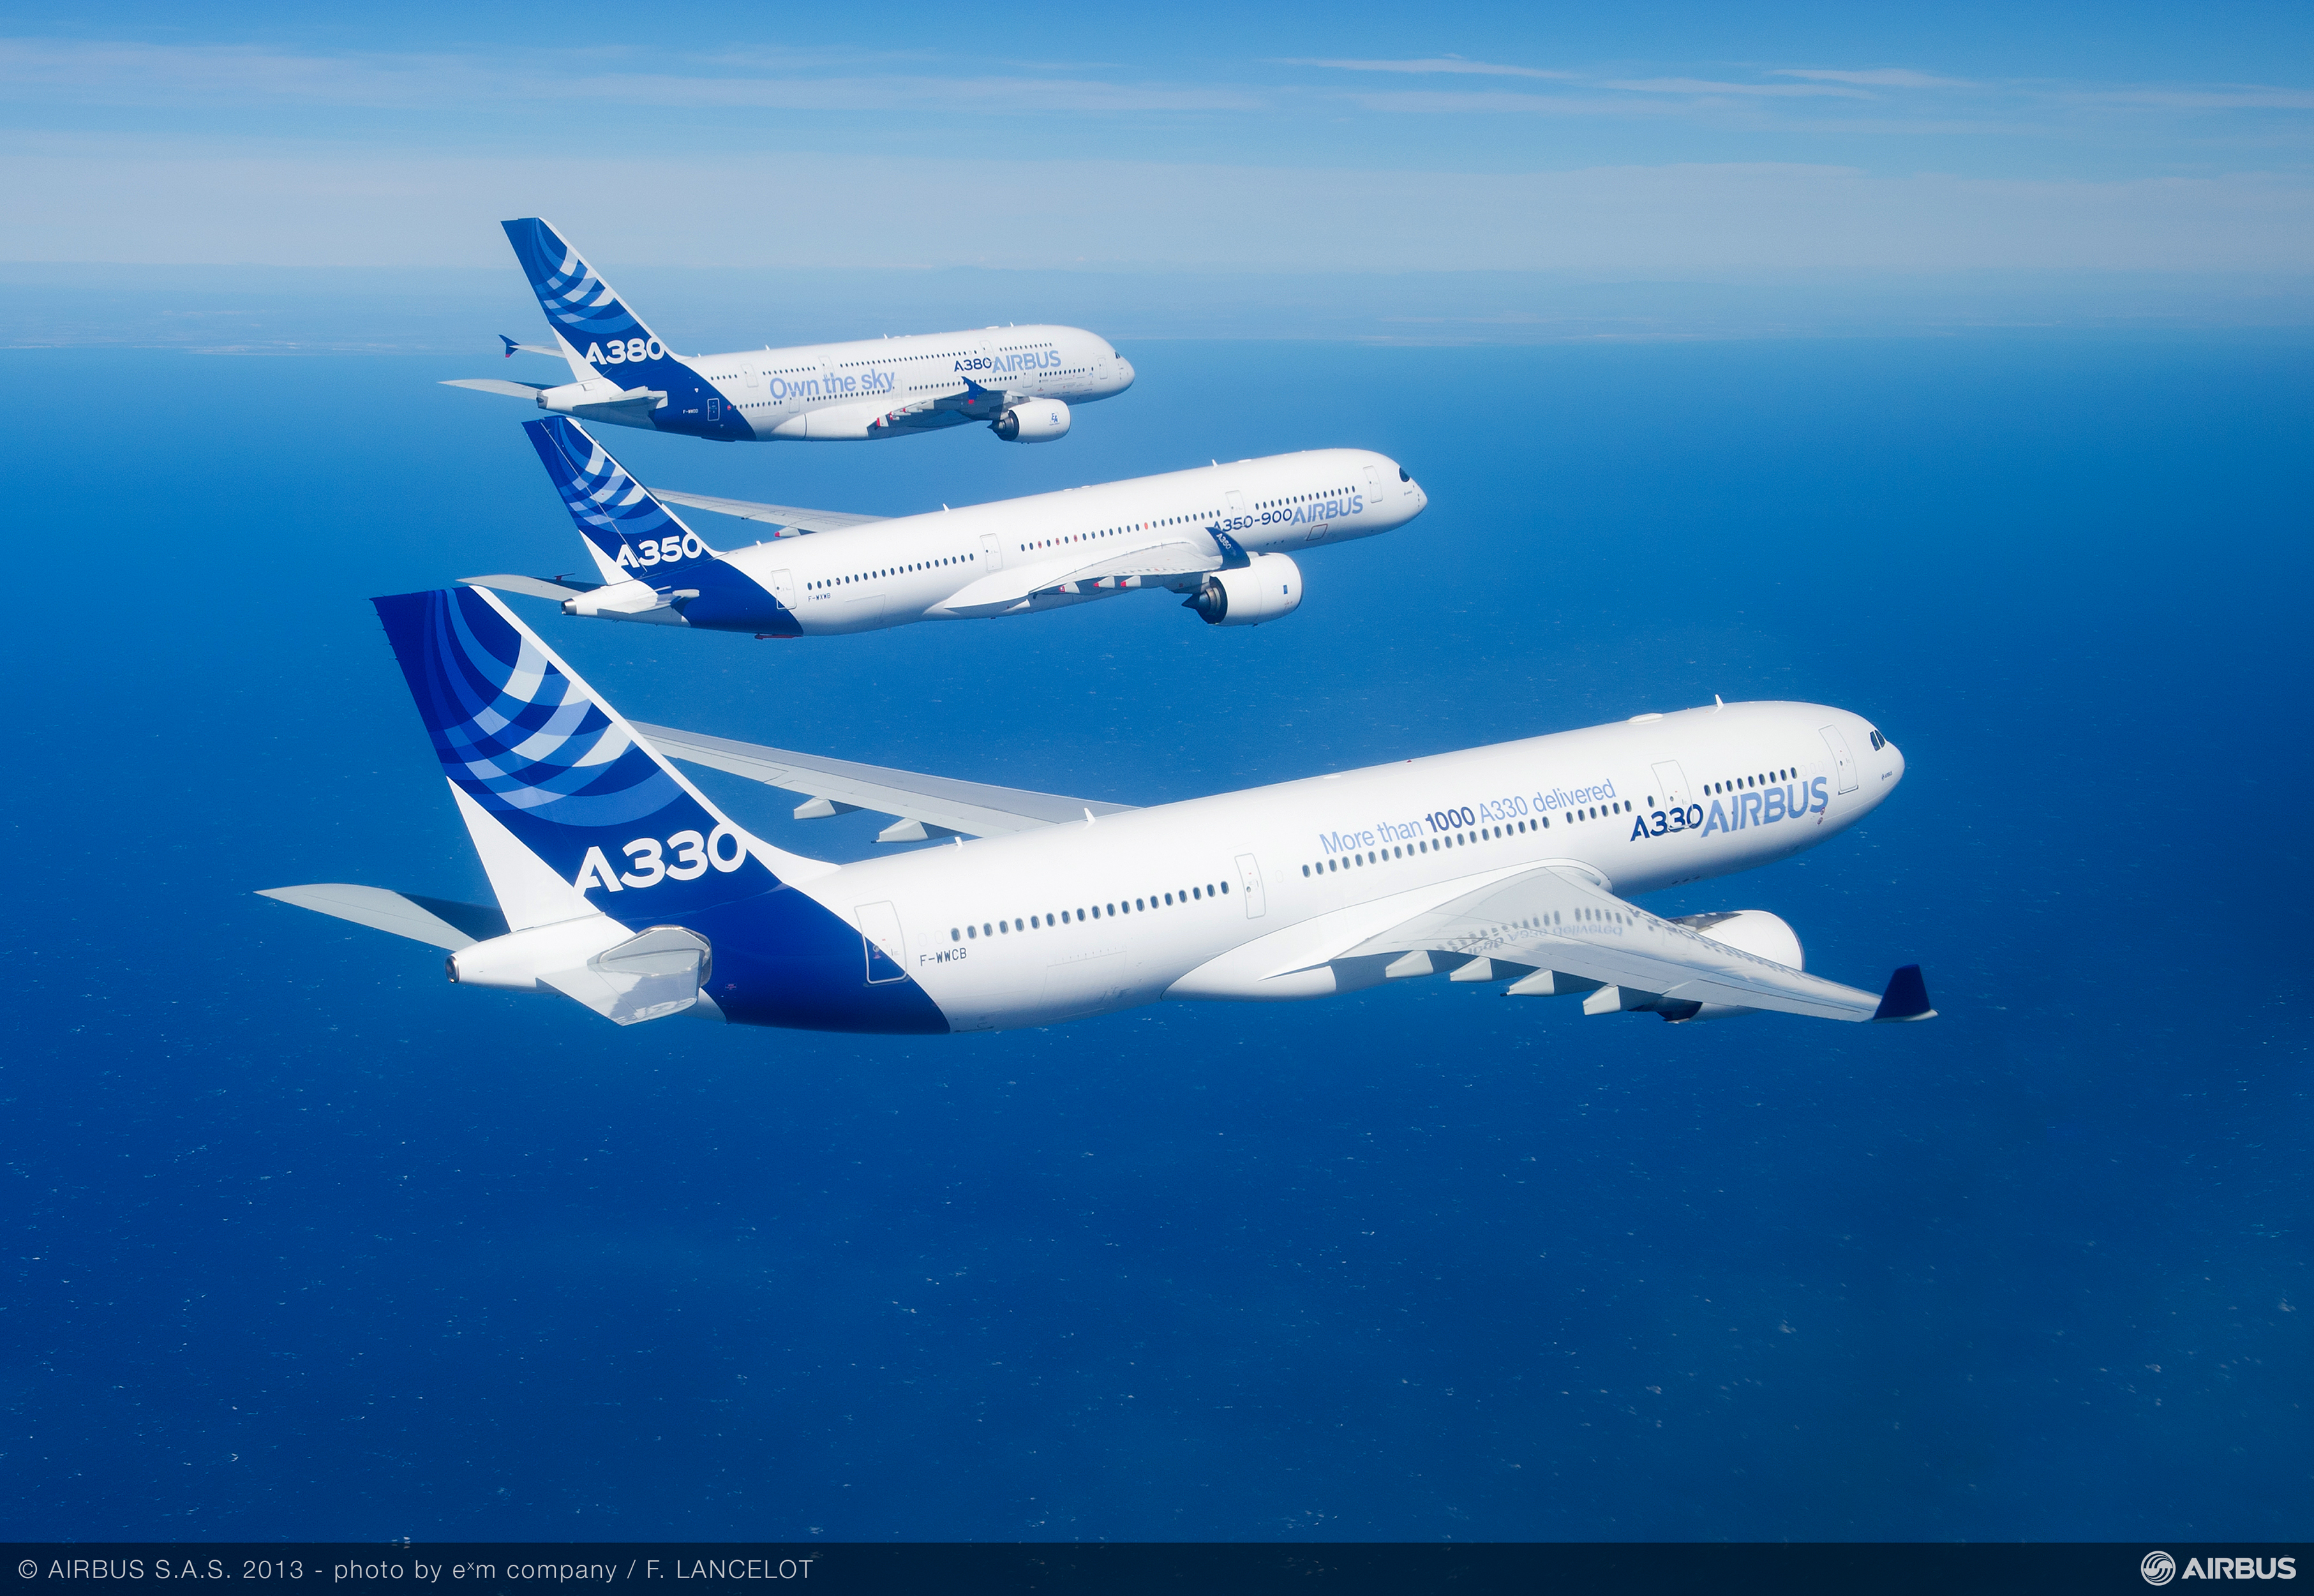 Airbus_Family_flight_A330_A350_XWB_A380_air_to_air (1)